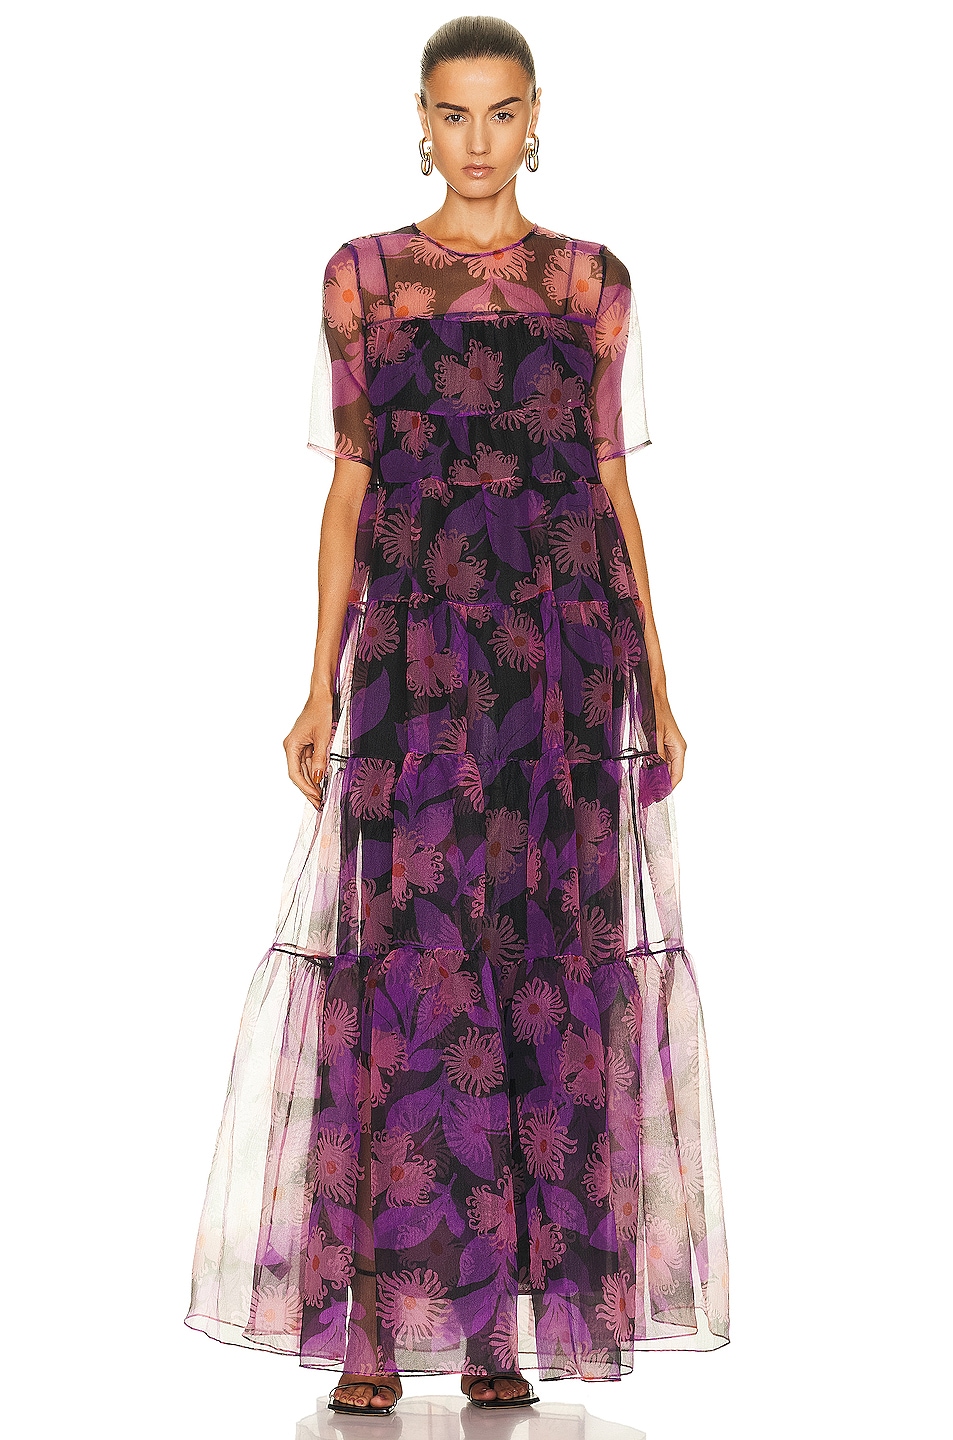 Staud Hyacinth Dress in QUARTZ ACID FLORAL | FWRD